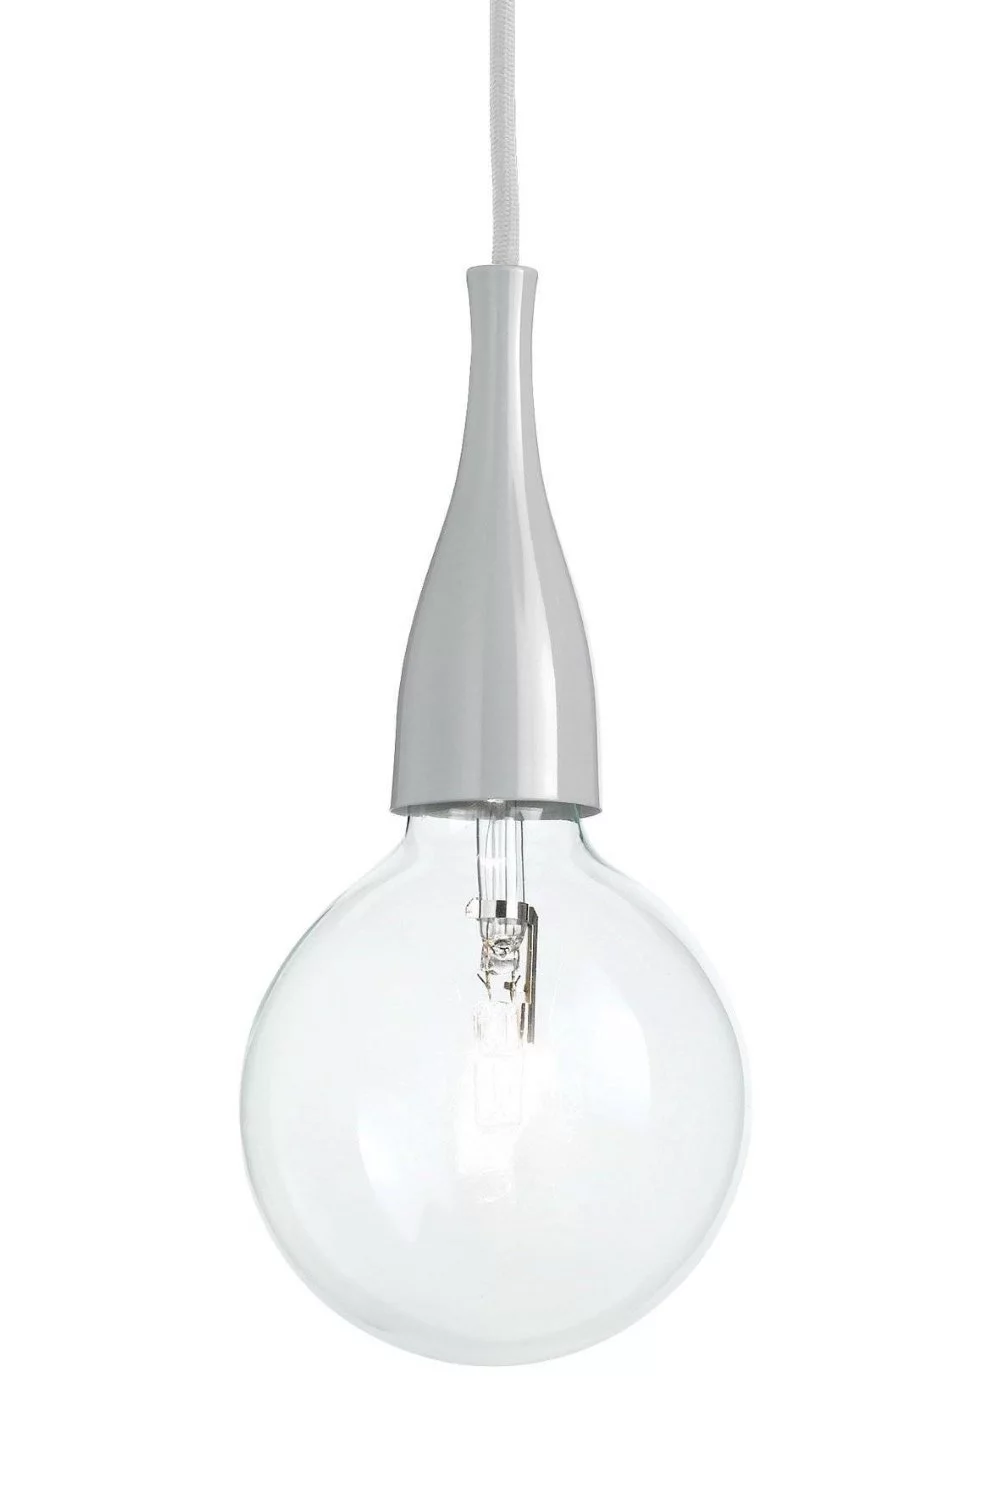   
                        Люстра IDEAL LUX (Італія) 48708    
                         у стилі лофт.  
                        Тип джерела світла: cвітлодіодні led, енергозберігаючі, розжарювання.                         Форма: коло.                                                                          фото 1